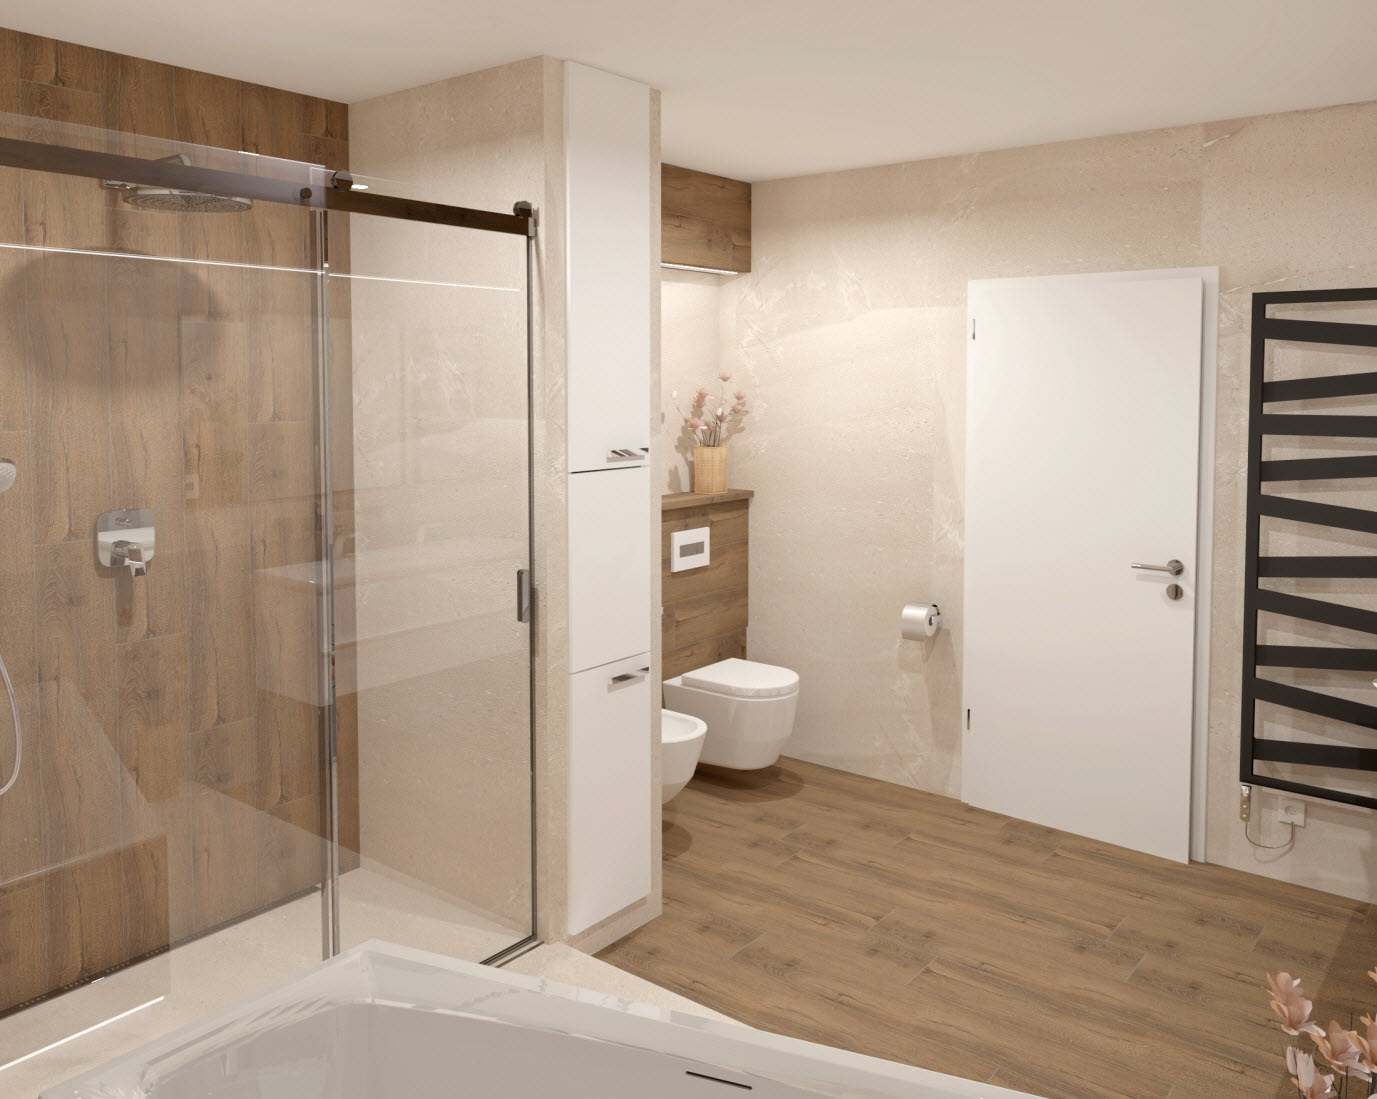 Vizualizace koupelny s obkladem a dlažbou Planches v designu dřeva